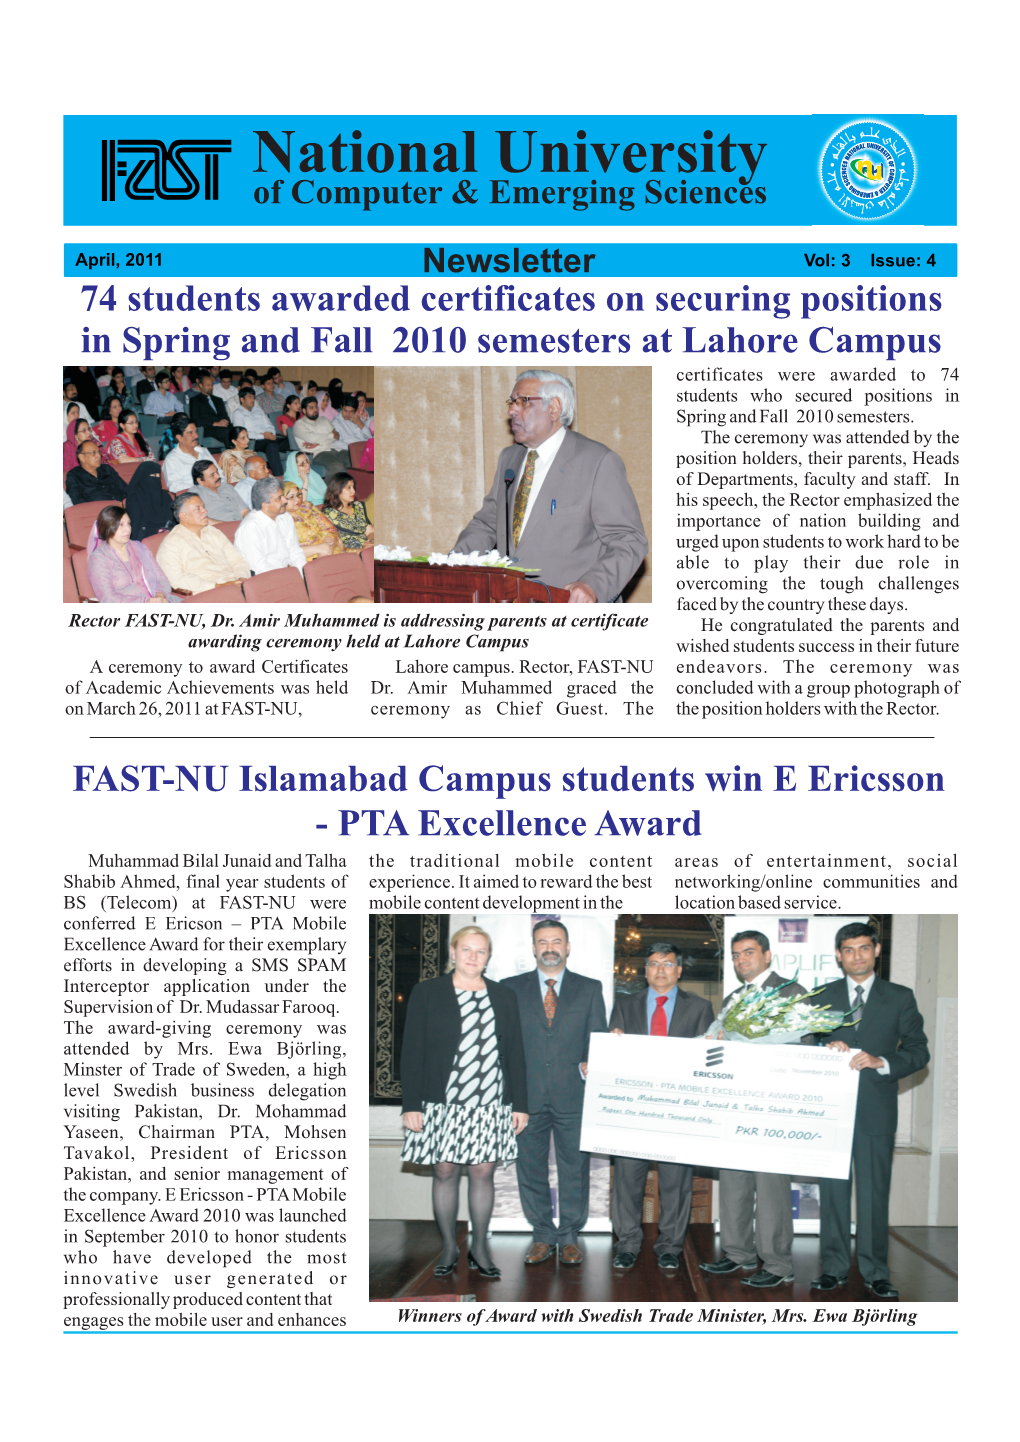 FAST-NU Islamabad Campus Students Win E Ericsson